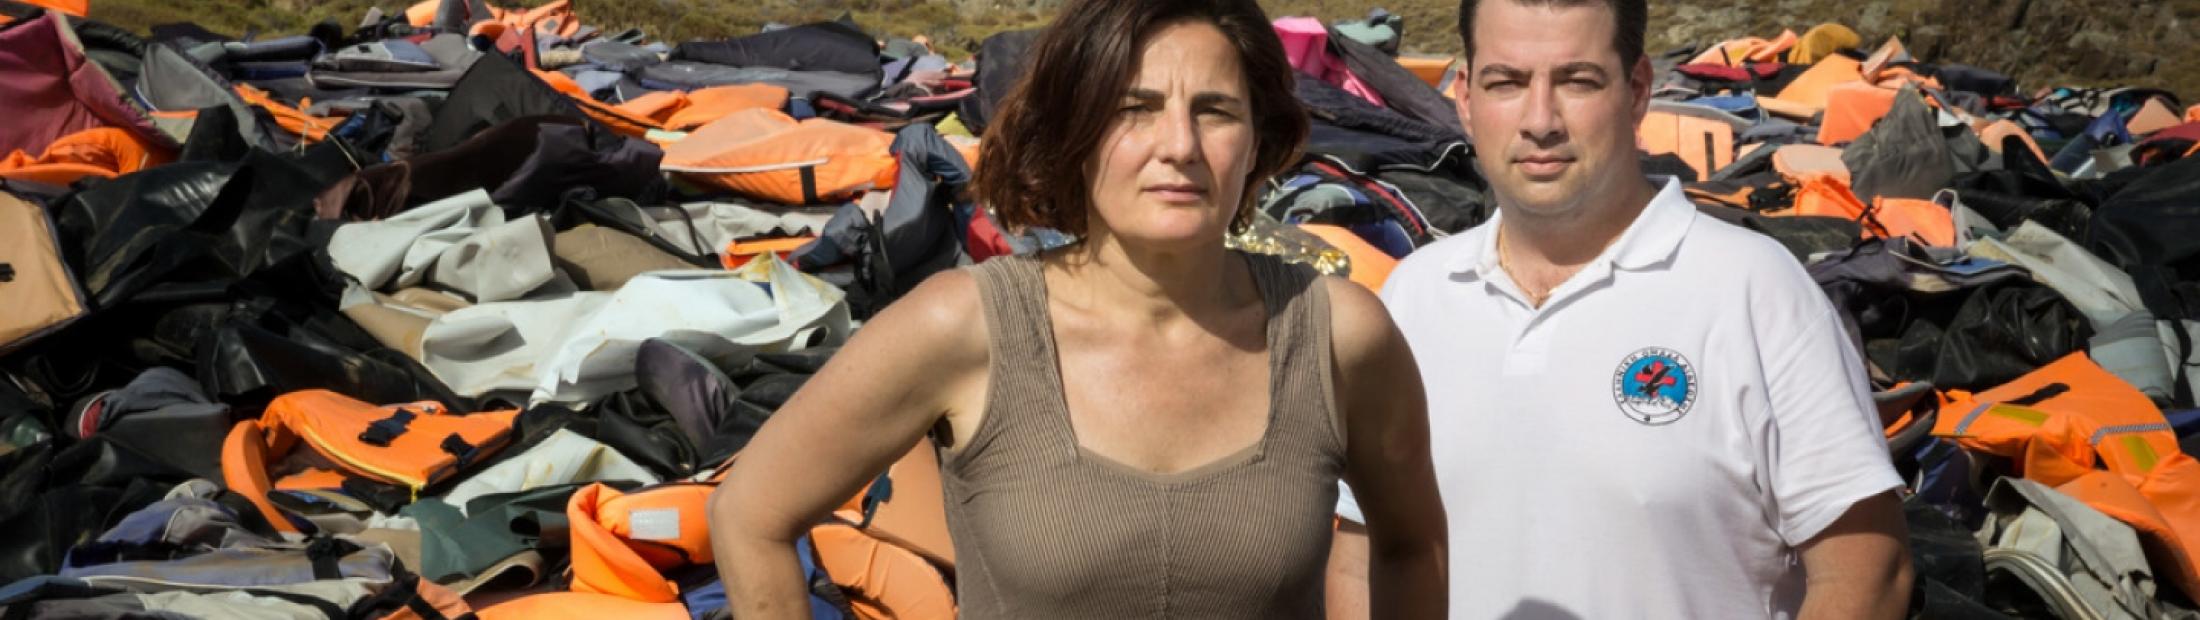 El Premio Nansen 2016 recompensa la labor de rescate a refugiados en Grecia